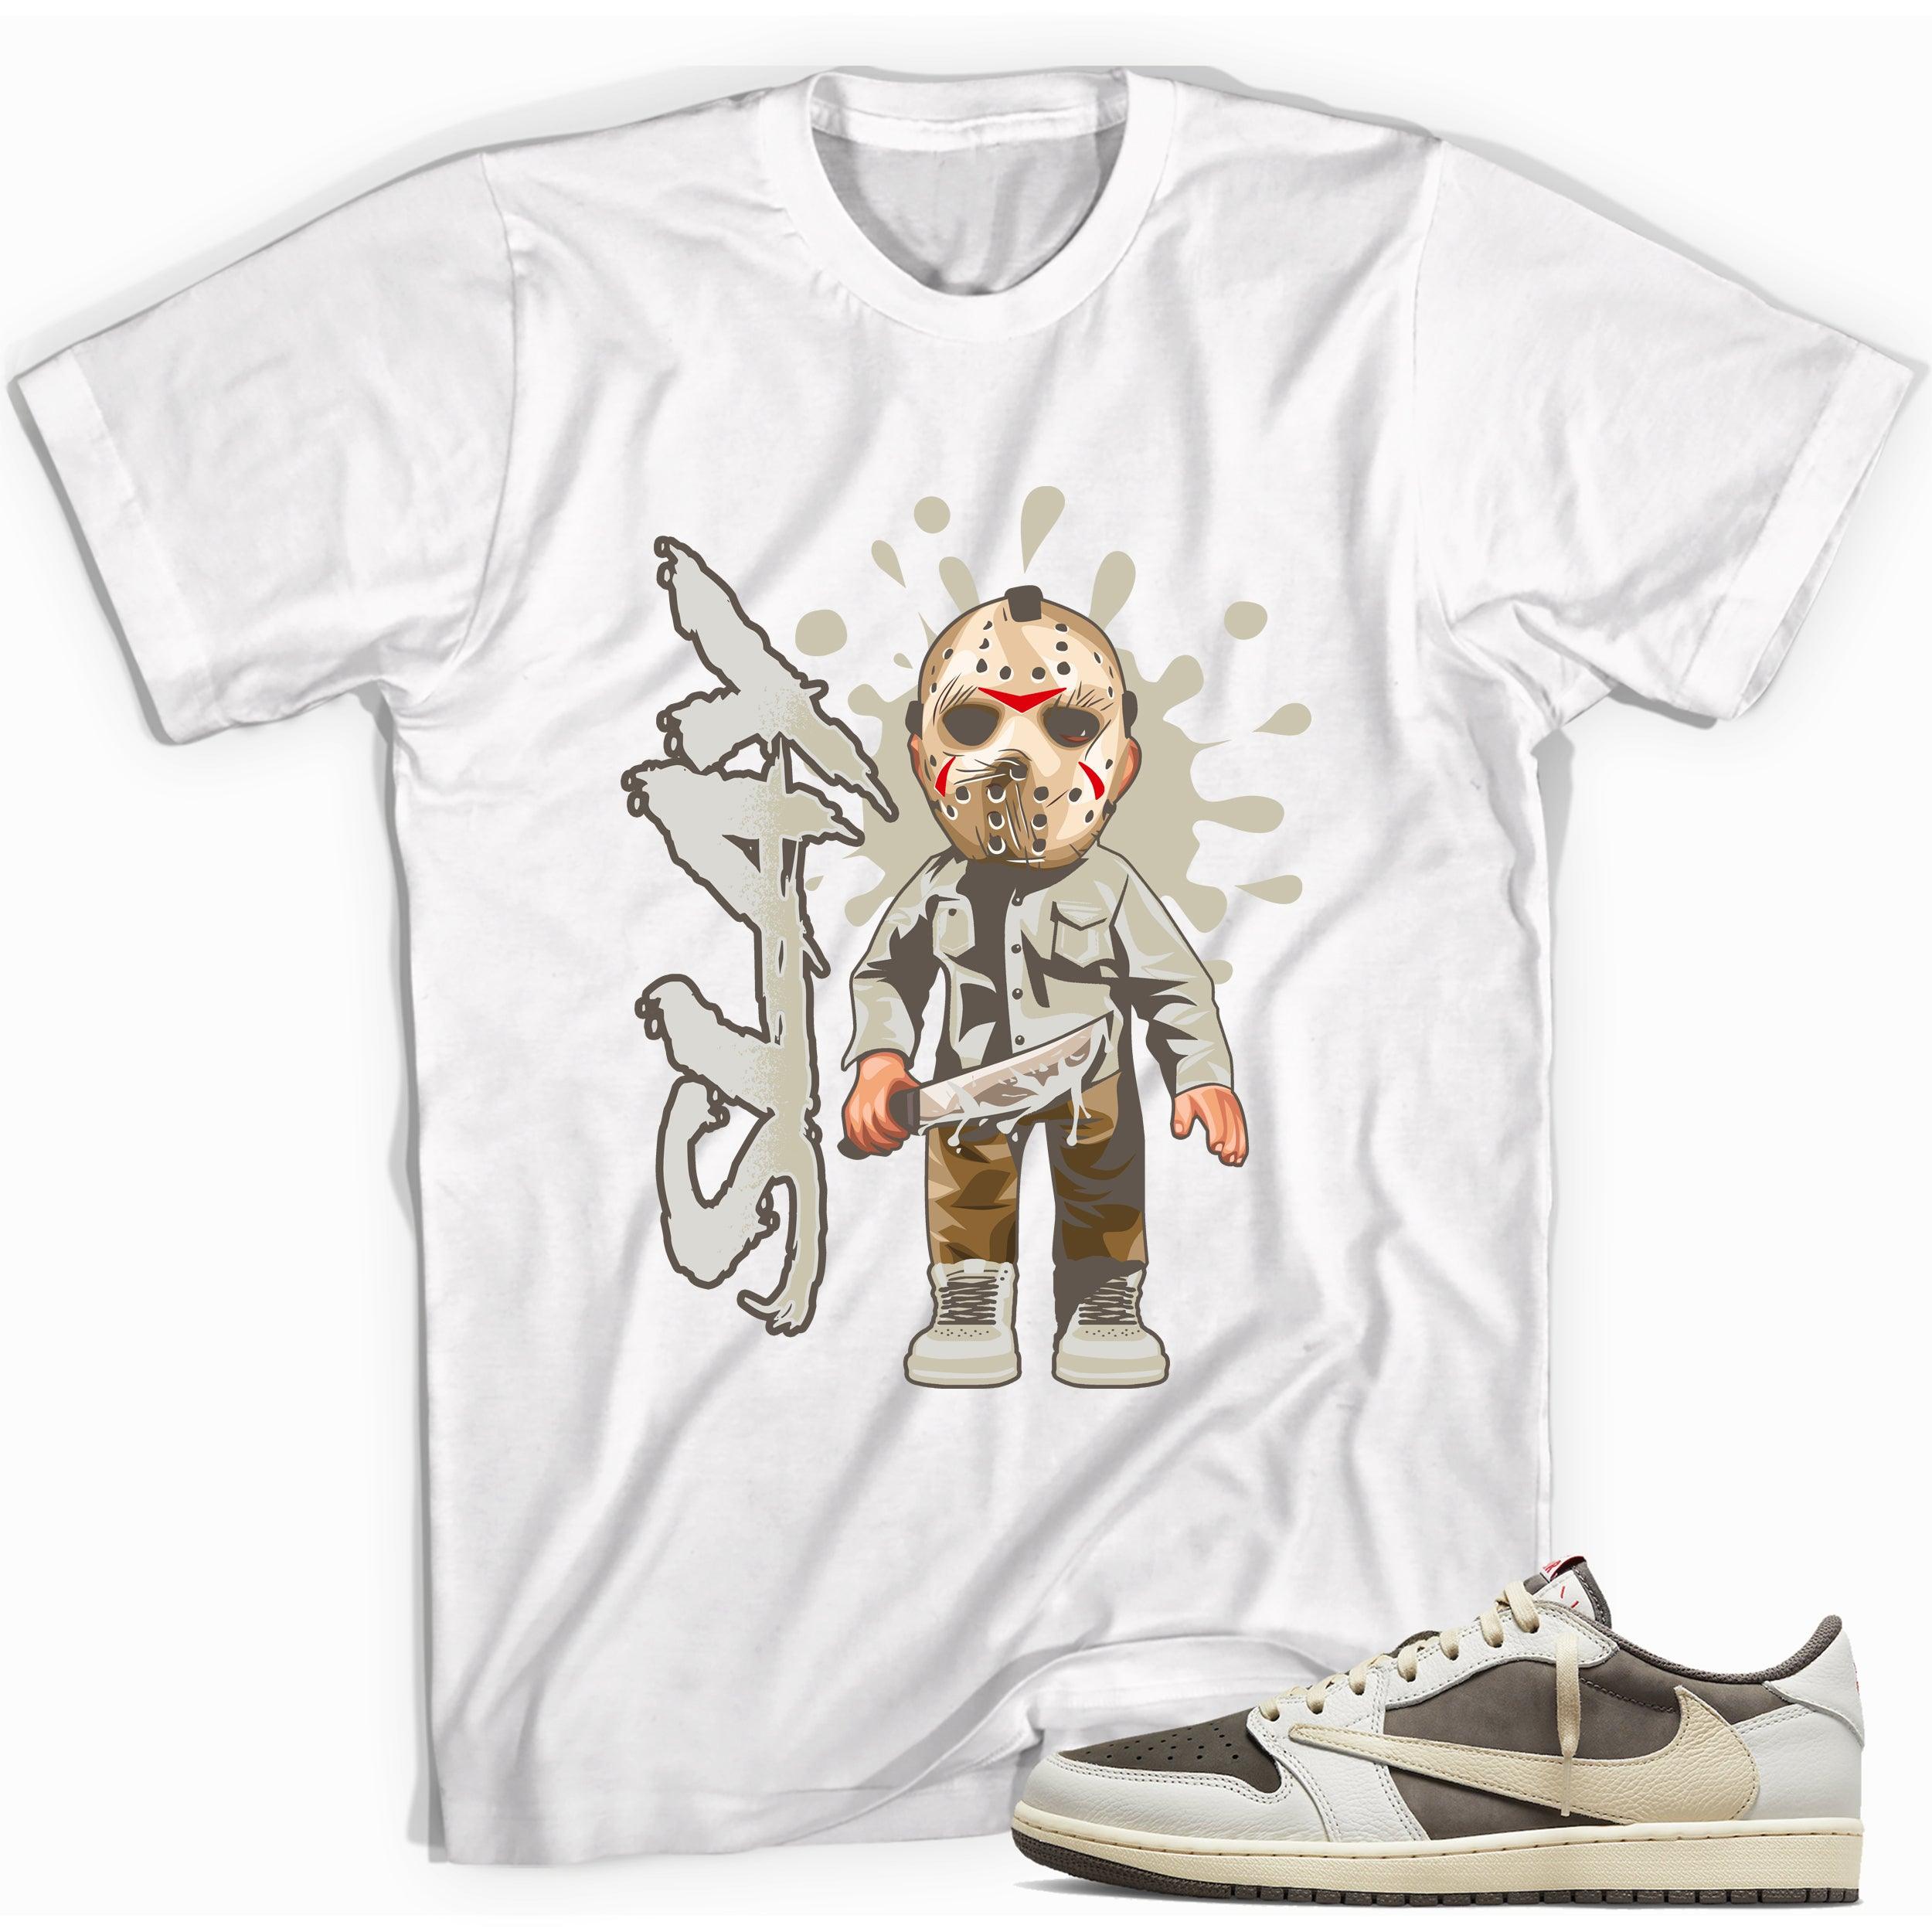 White Slay Sneaker Shirt for Travis Scott Jordan 1s photo